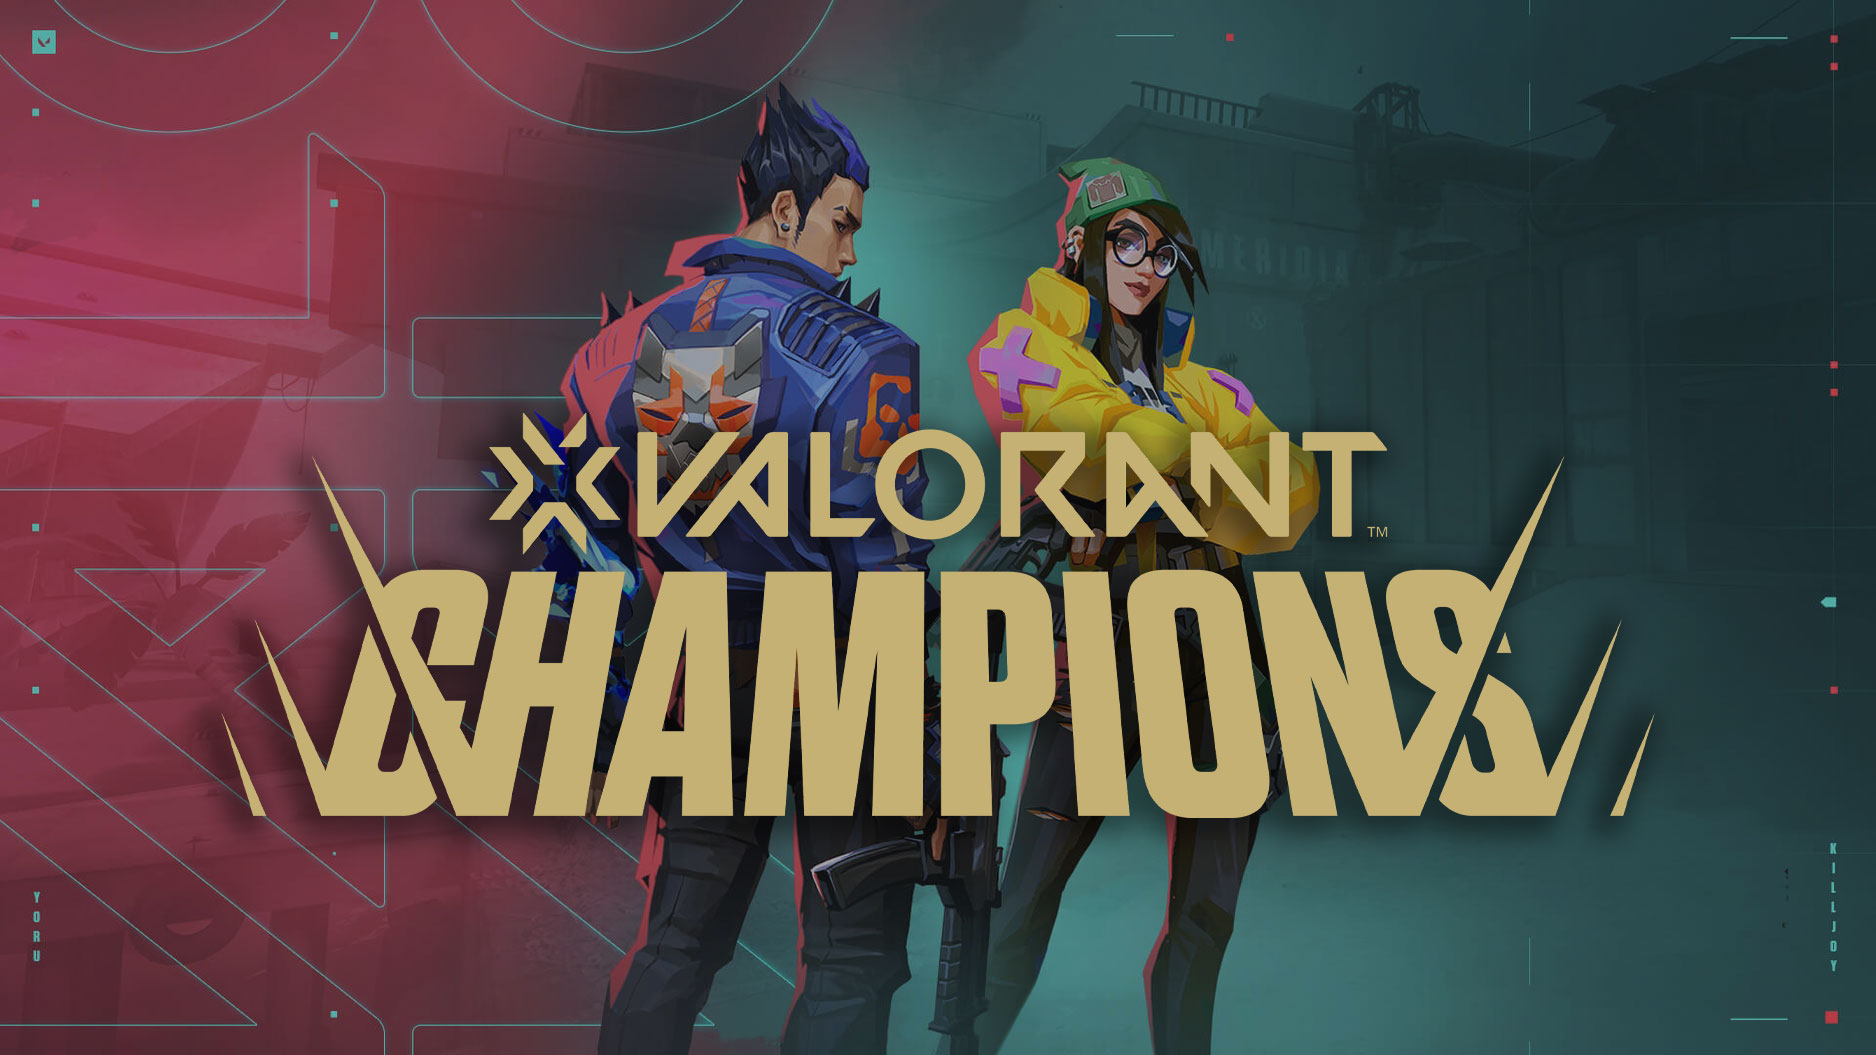 Valorant Champions 2021: veja equipes, calendário e formato do mundial